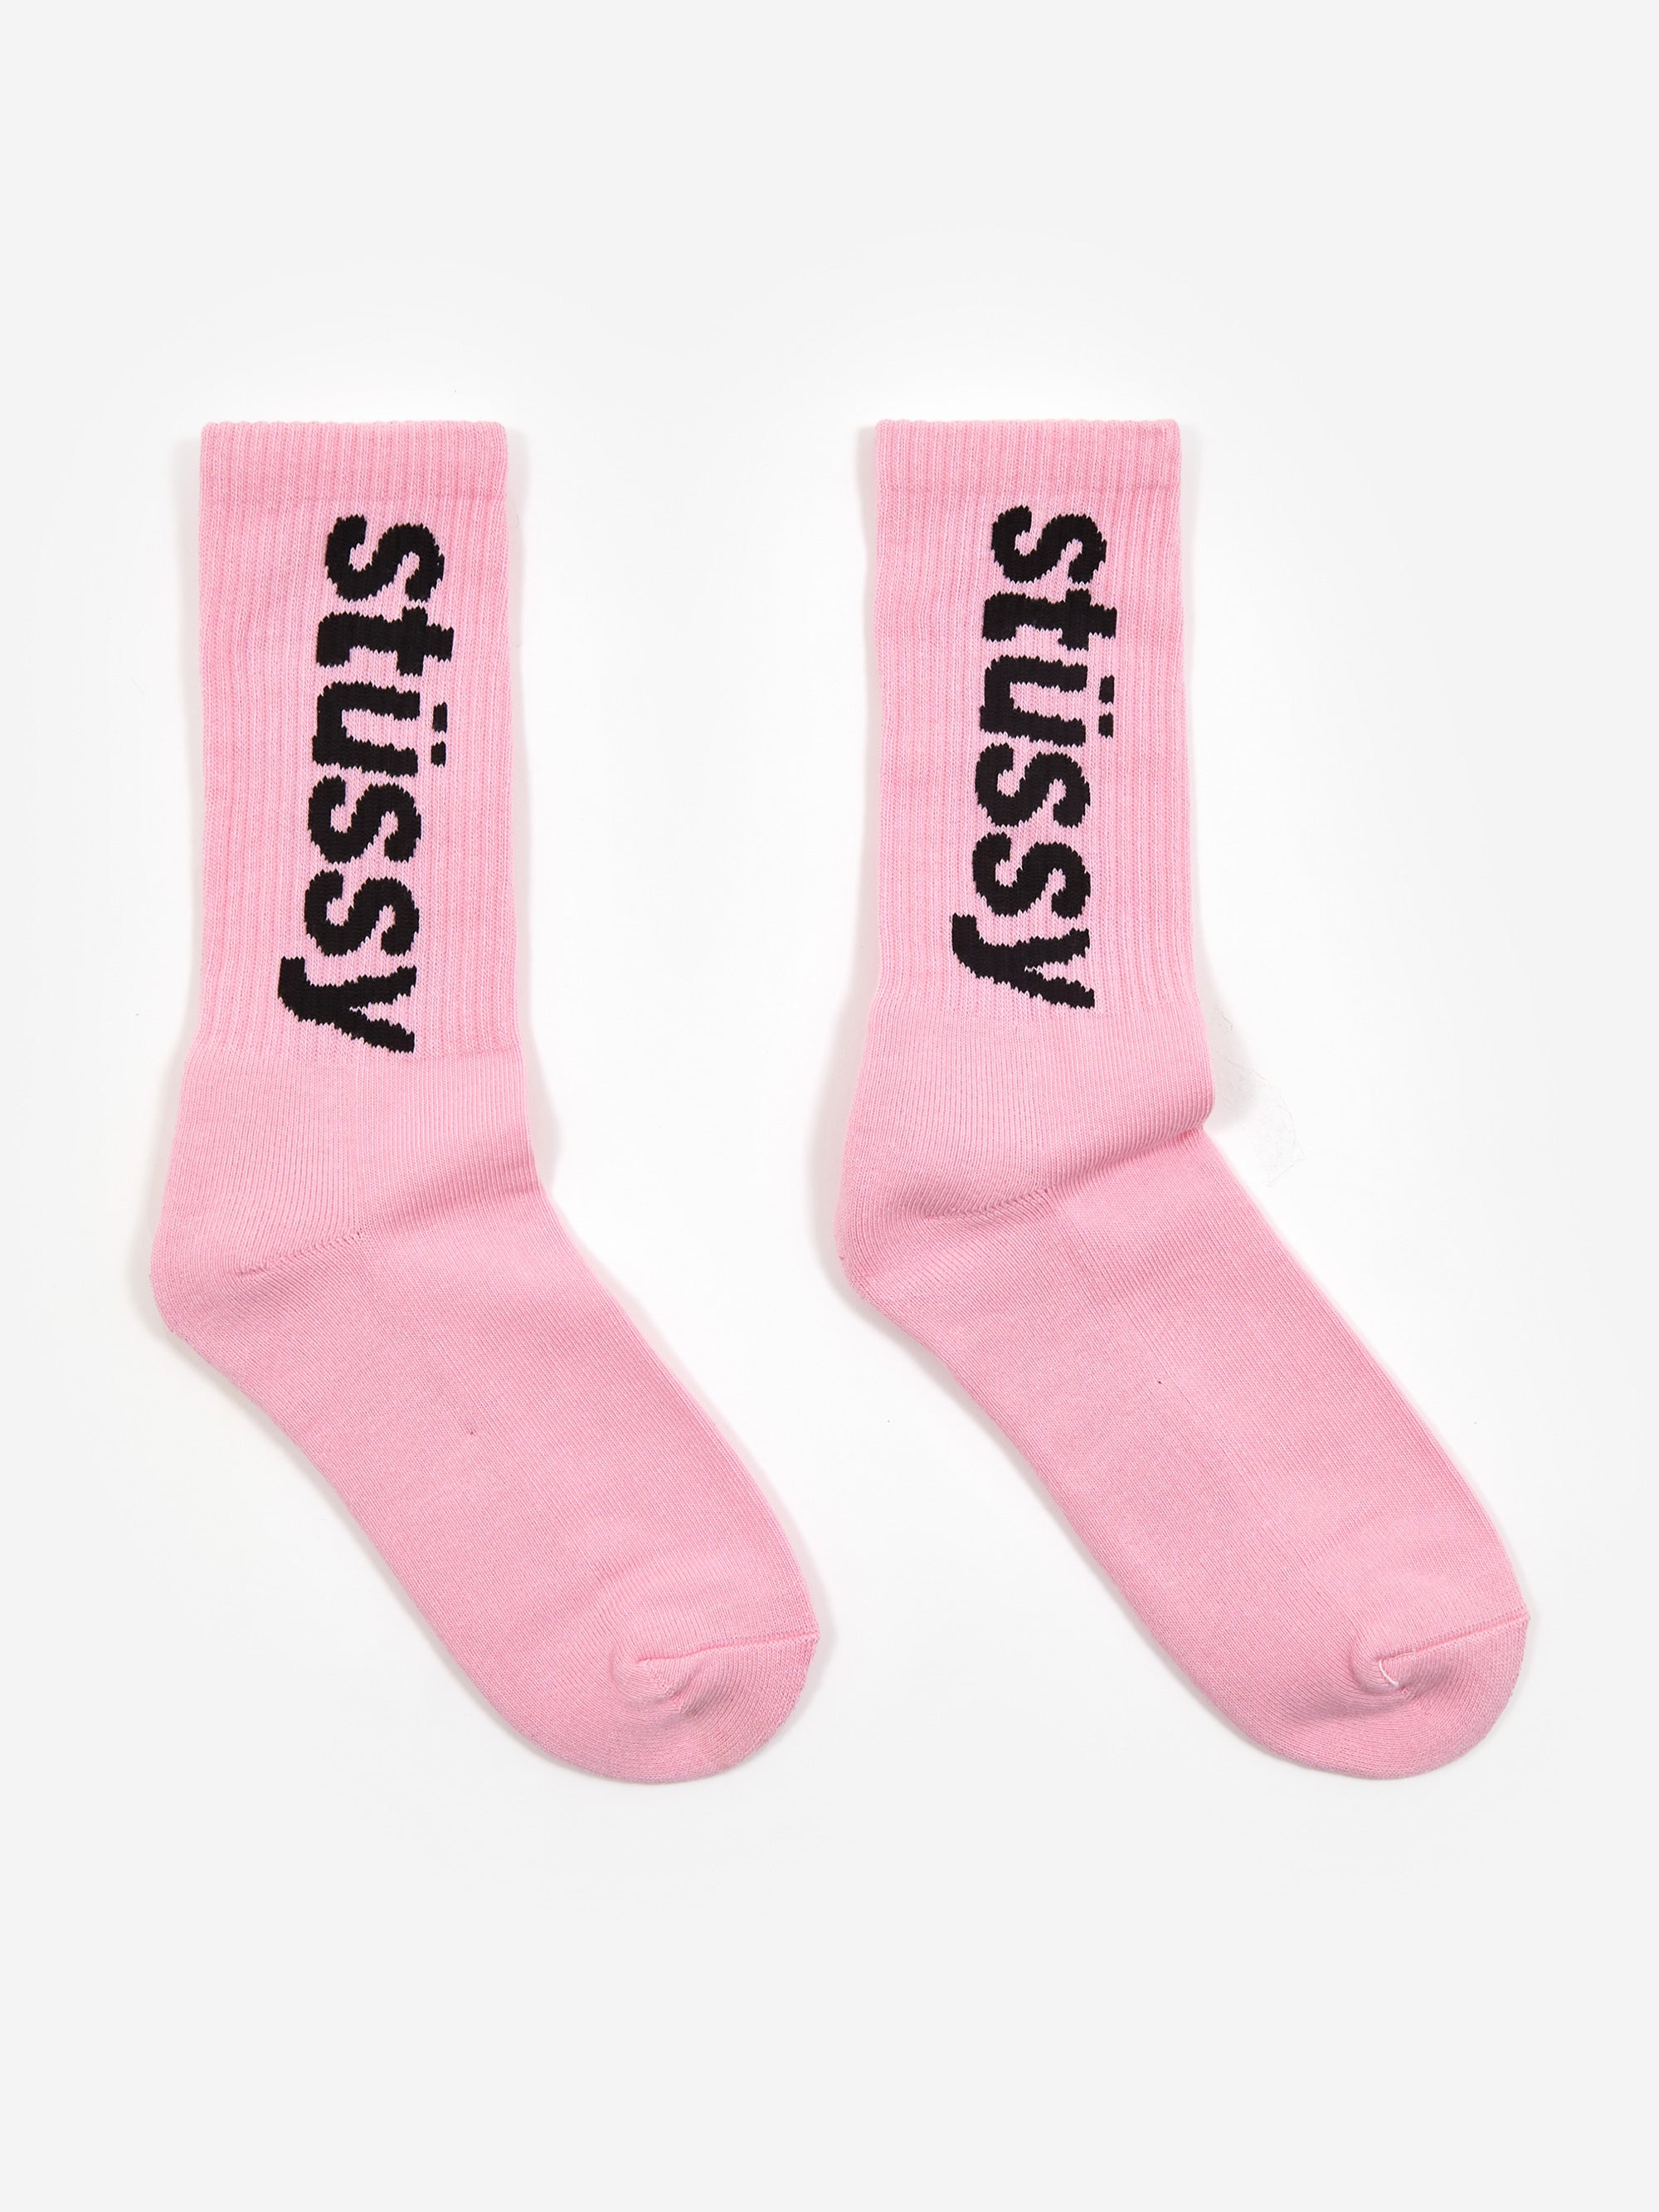 Stussy Helvetica Crew Socks Pink/Black – Goodhood